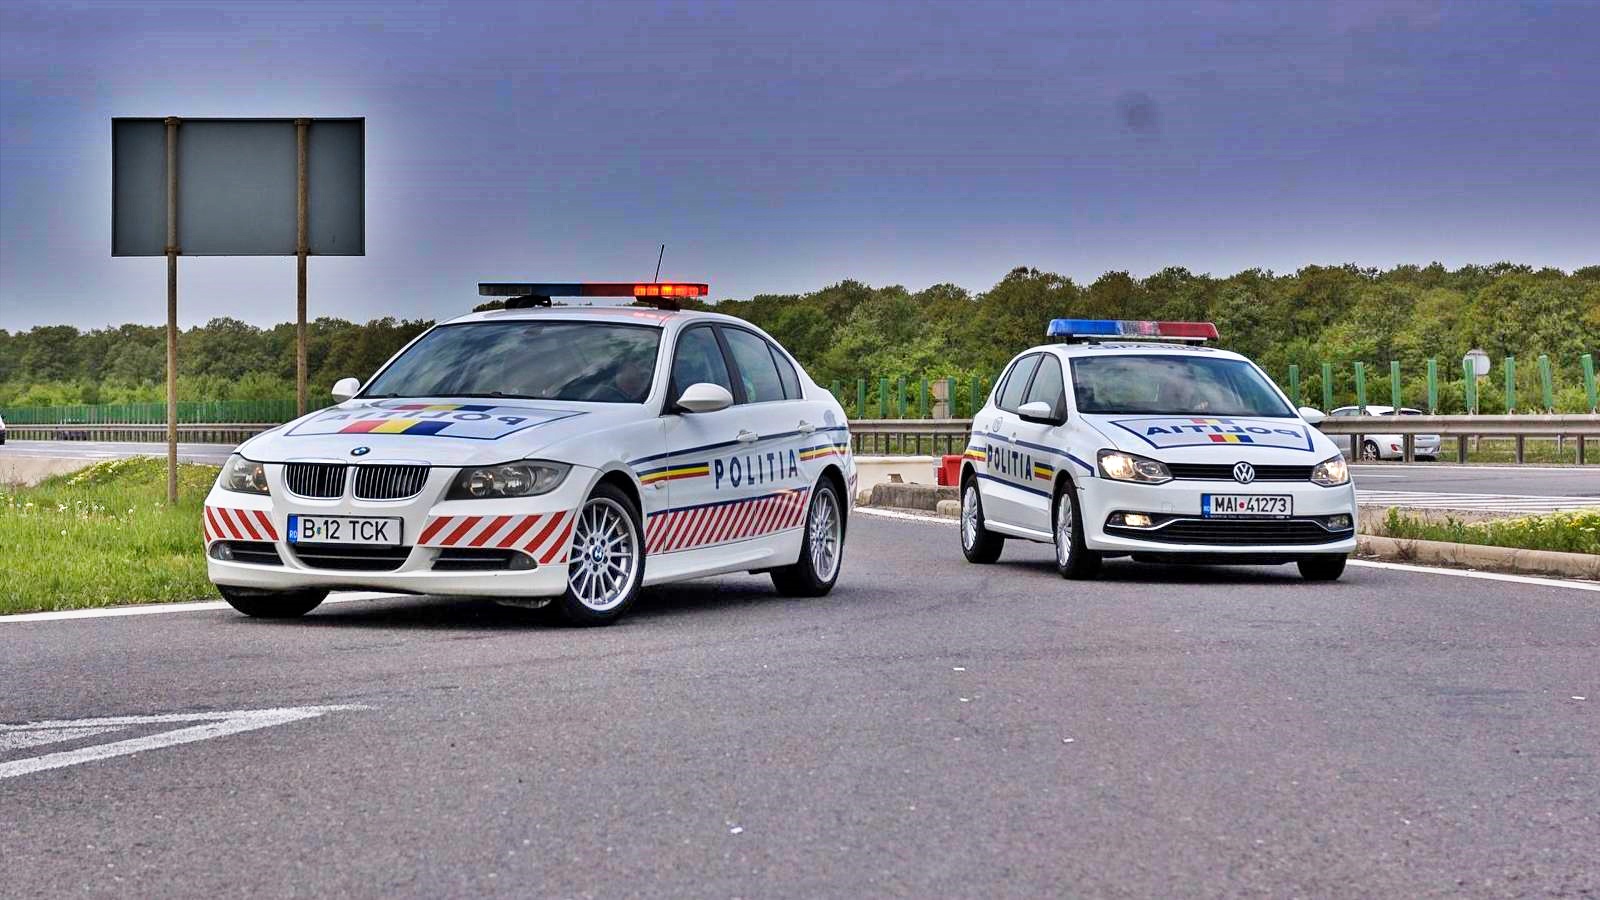 Rumænsk politi holder afstand